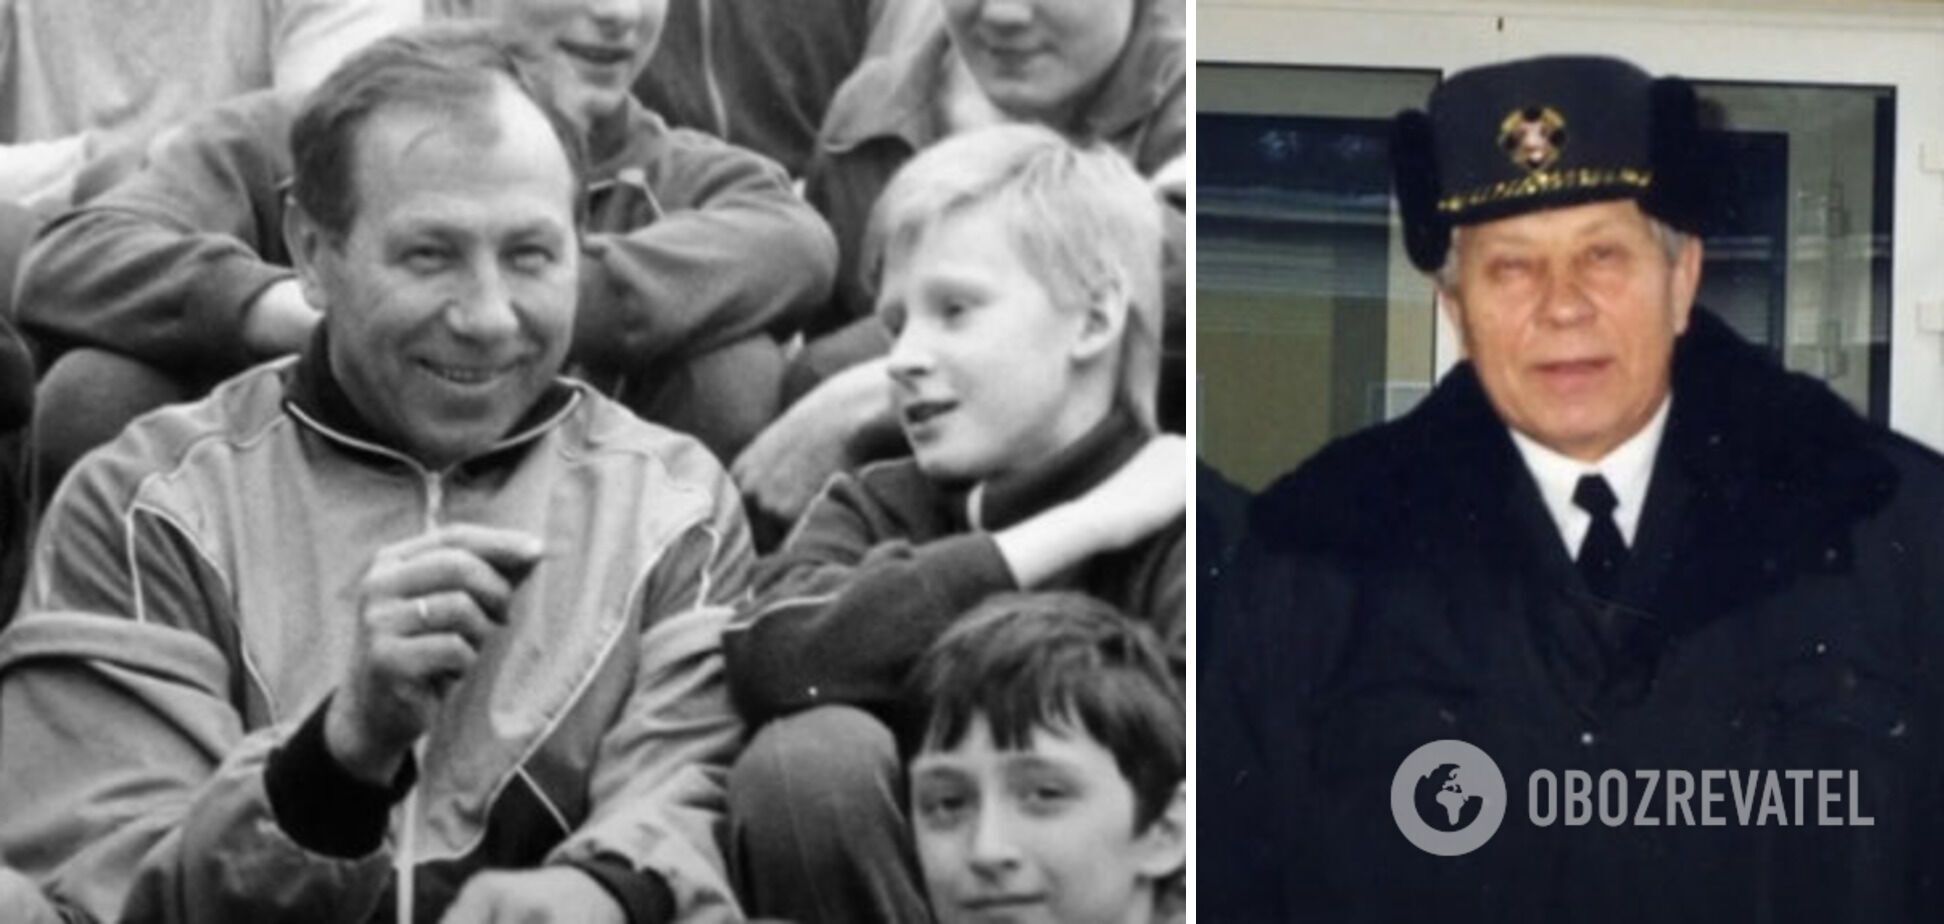 Спортсмены, сбежавшие из СССР: одесская выдумка с икрой, похищение КГБ и шантаж бабушкой